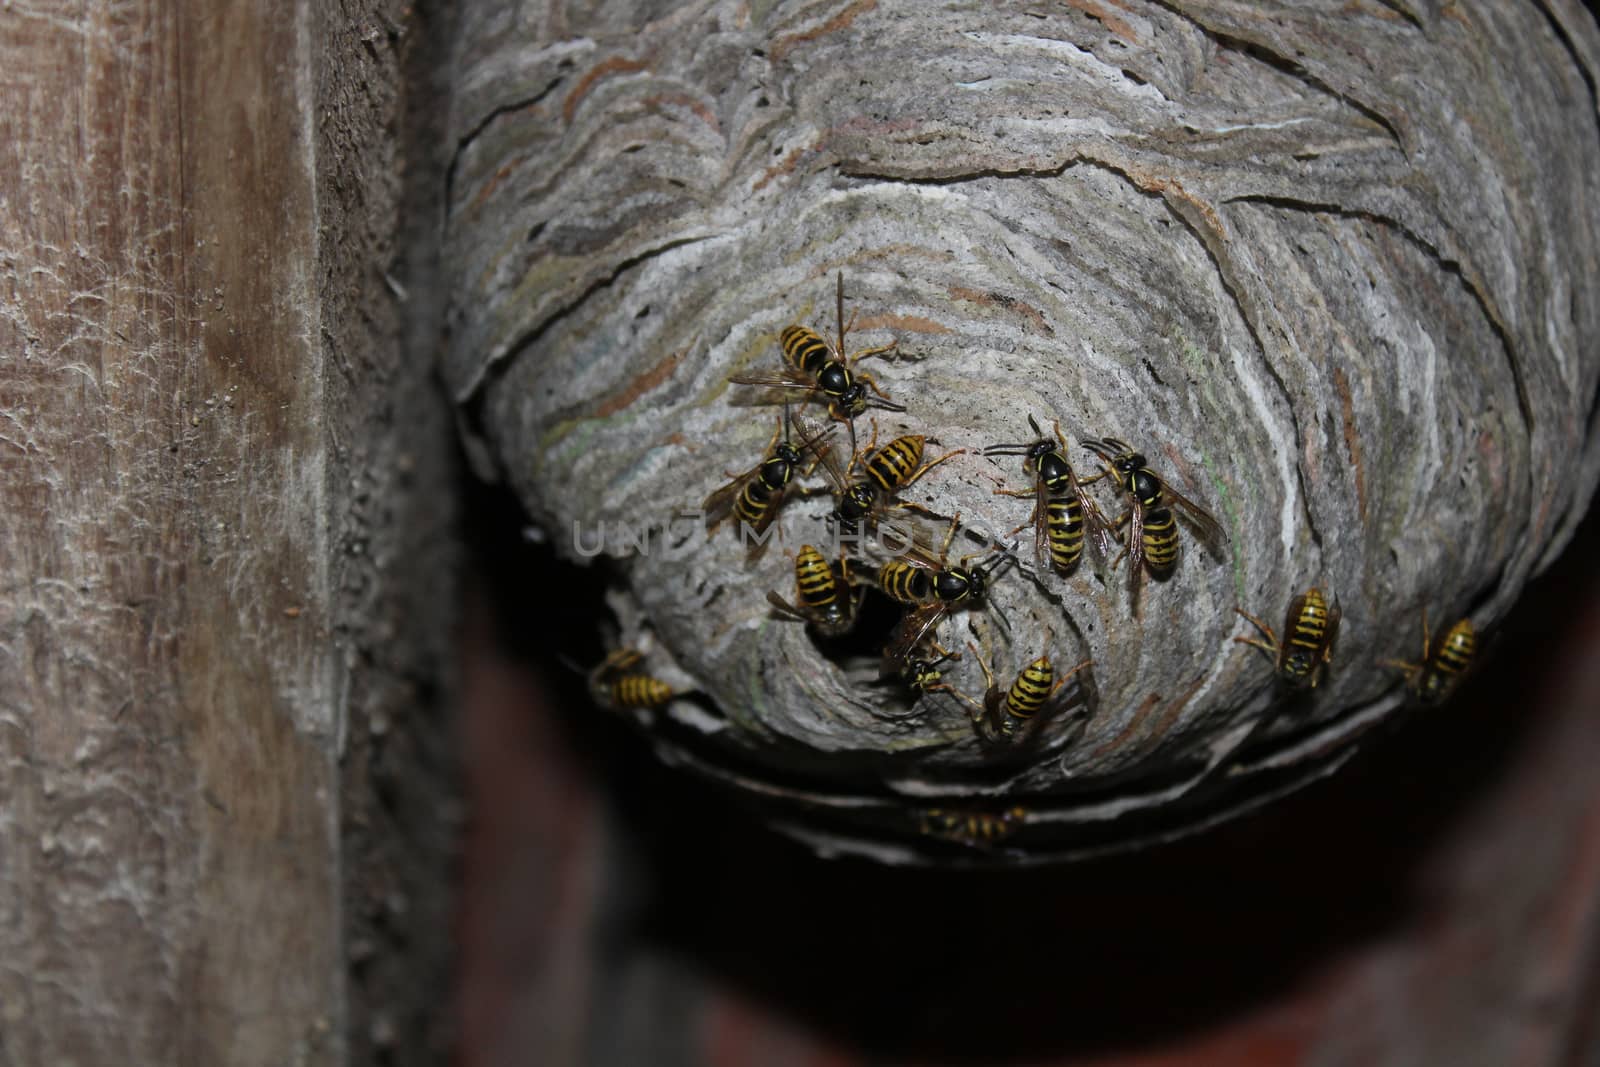 wasps nest and wasps by martina_unbehauen